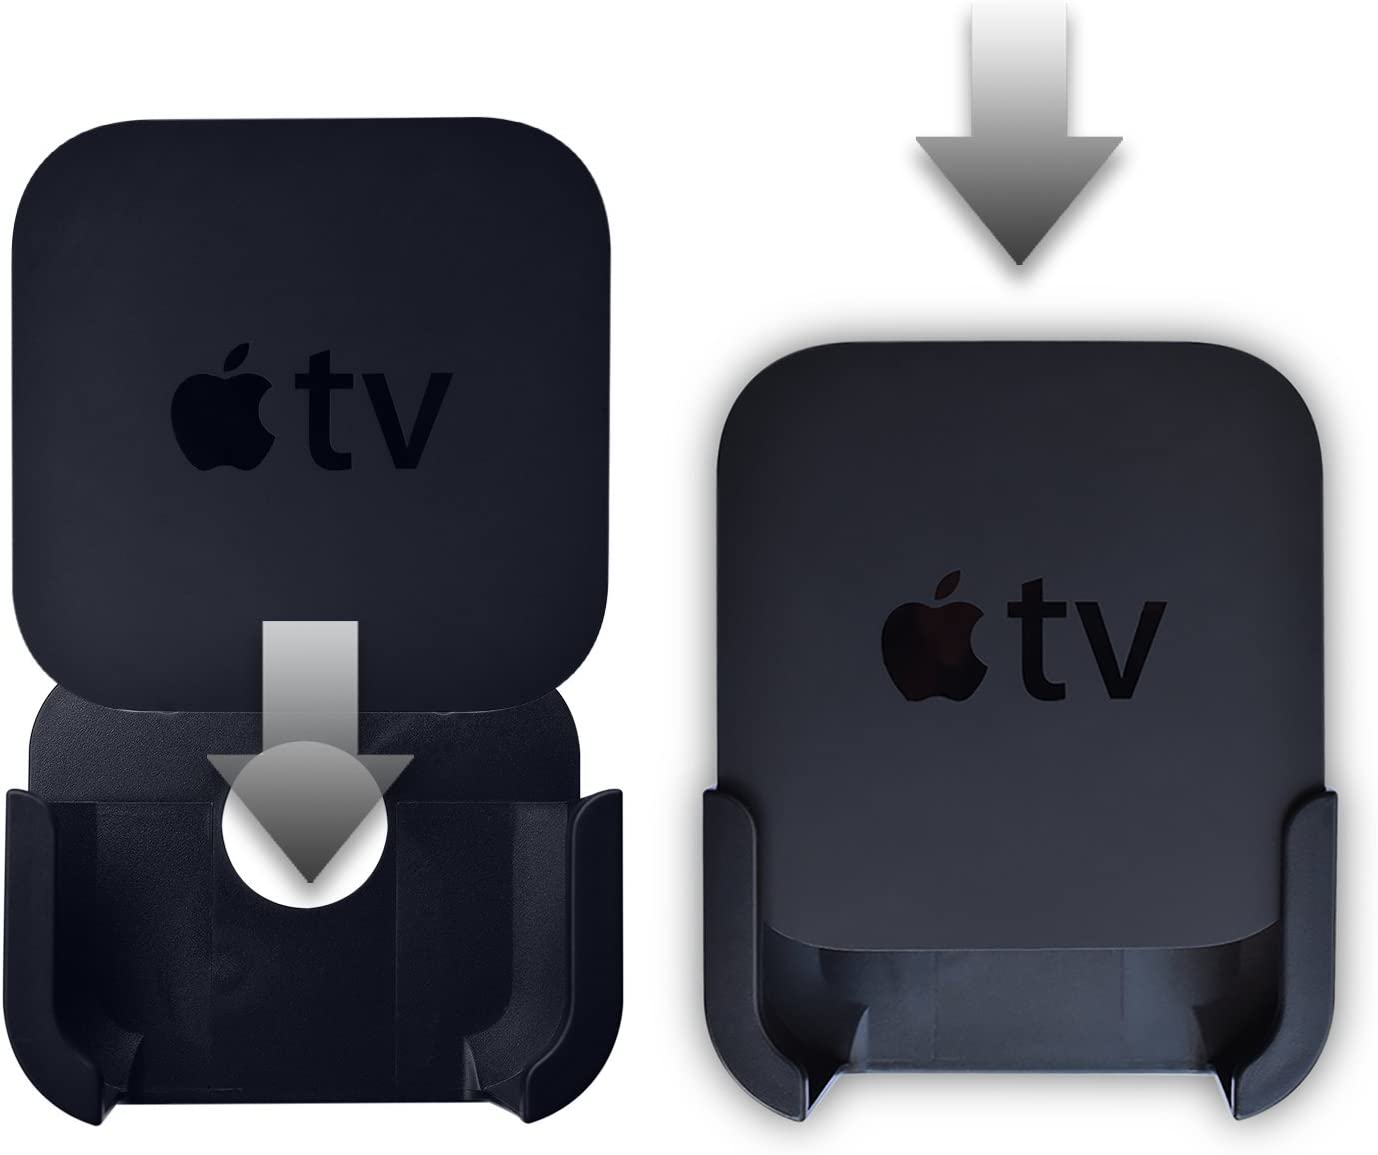 I migliori accessori per Apple TV e Apple TV 4K